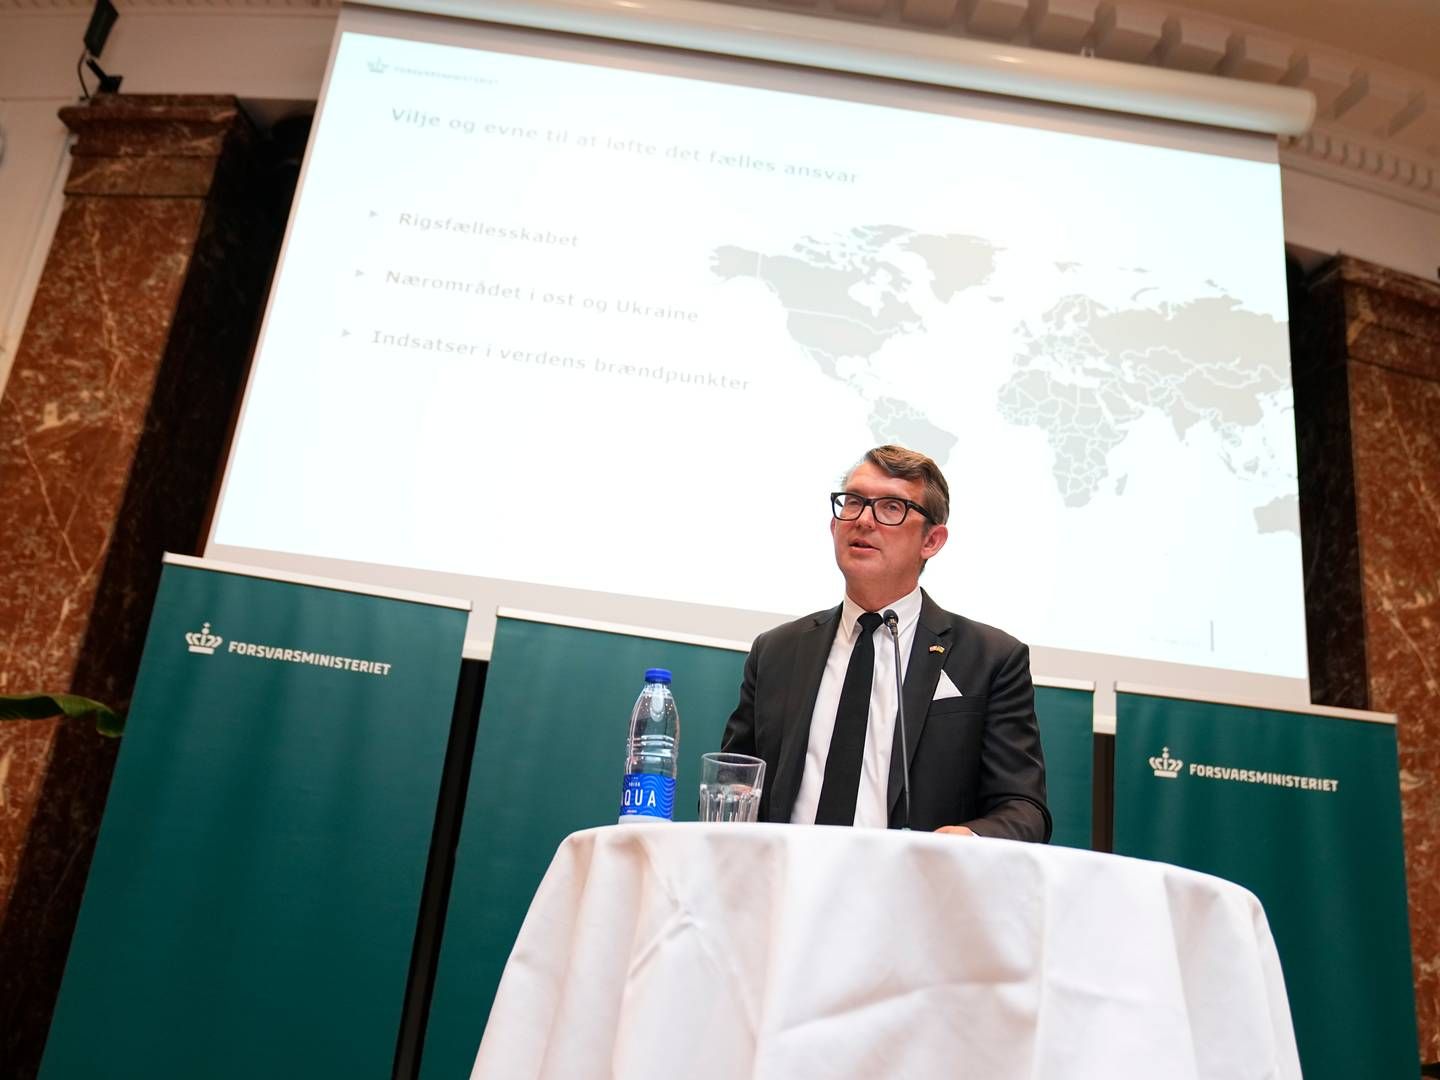 Fungerende forsvarsminister Troels Lund Poulsen (V) præsenterede tidligere tirsdag regeringens forsvarsudspil.